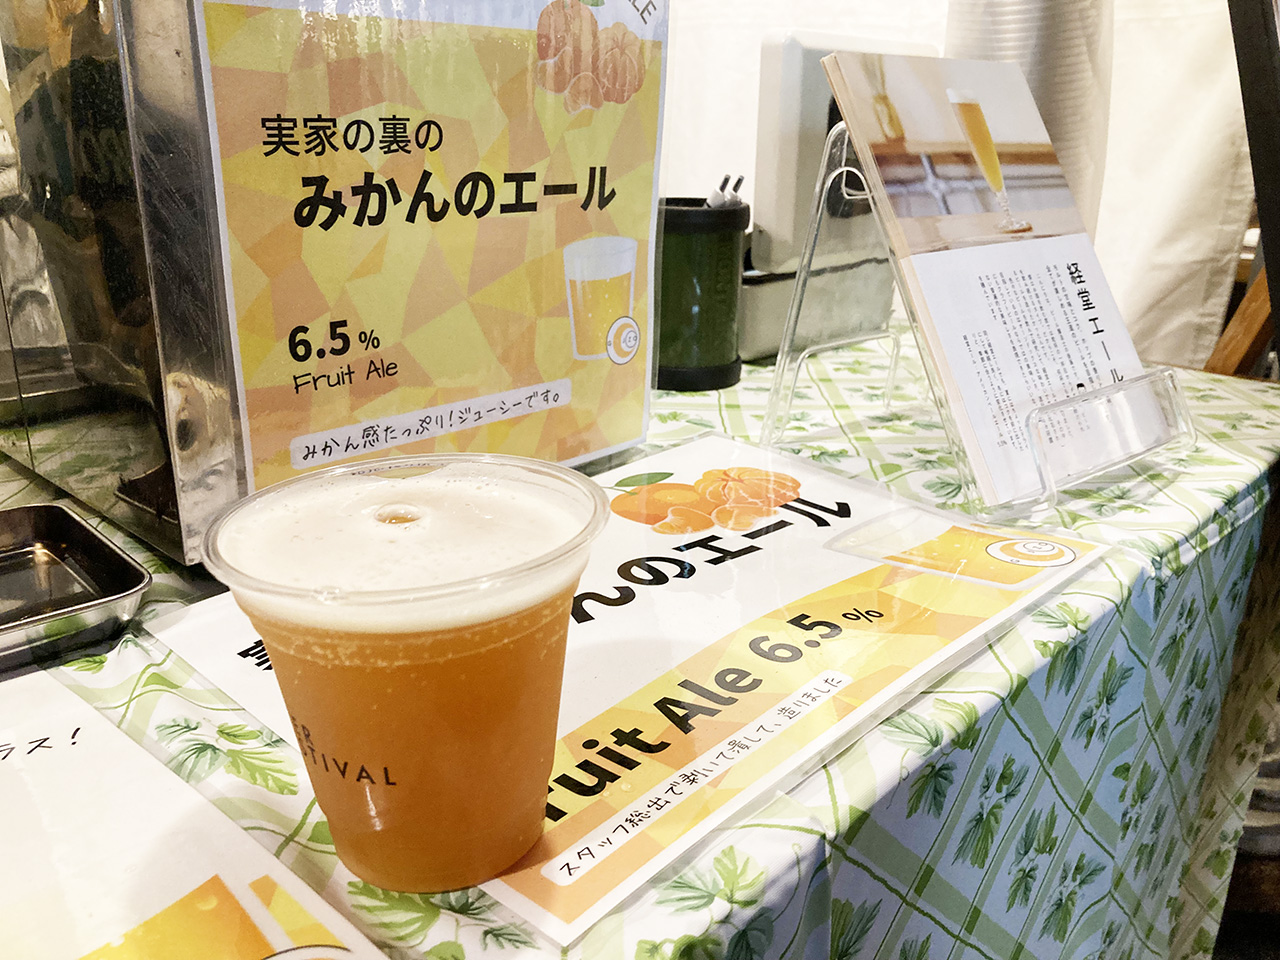 せいせきSCで9/15から「せいせき夏のビールまつり」開催